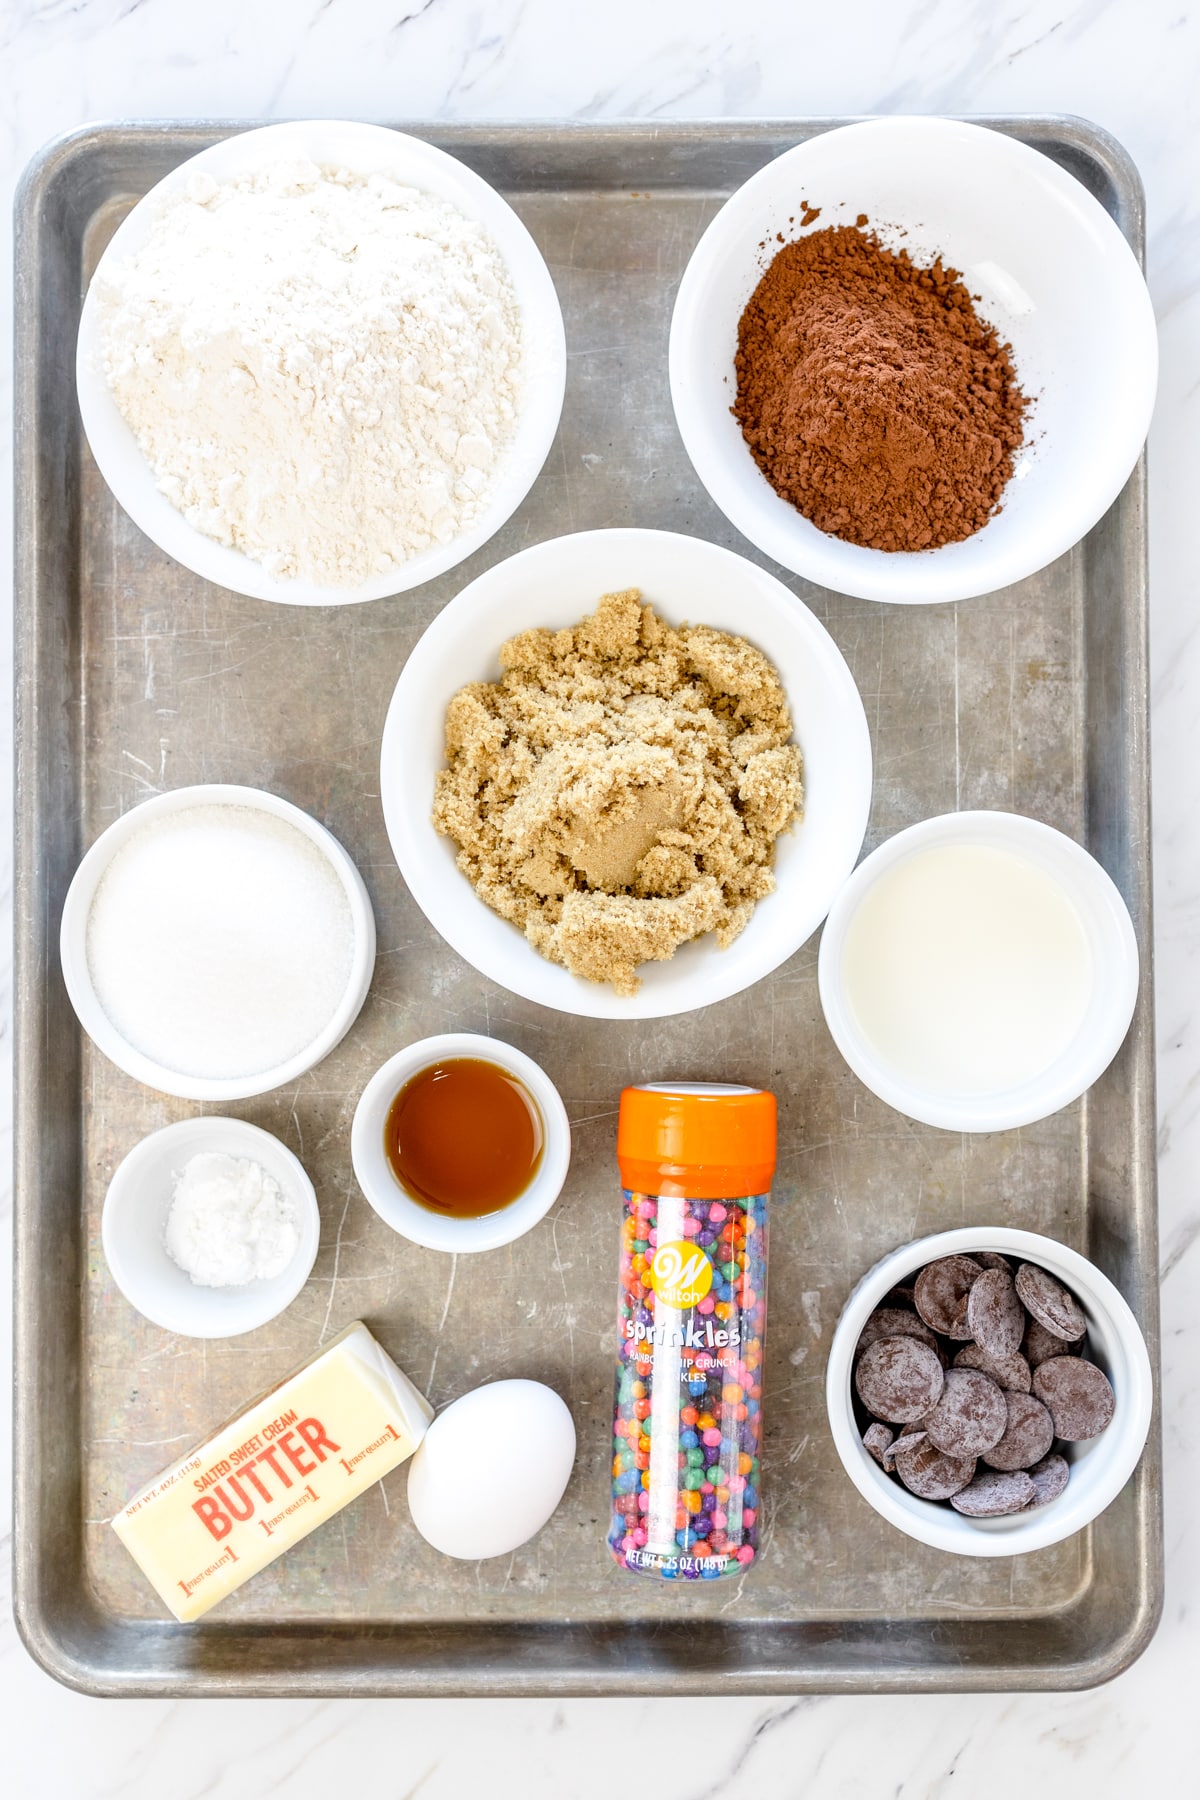 Top view of ingredients needed to make Cosmic Brownies.